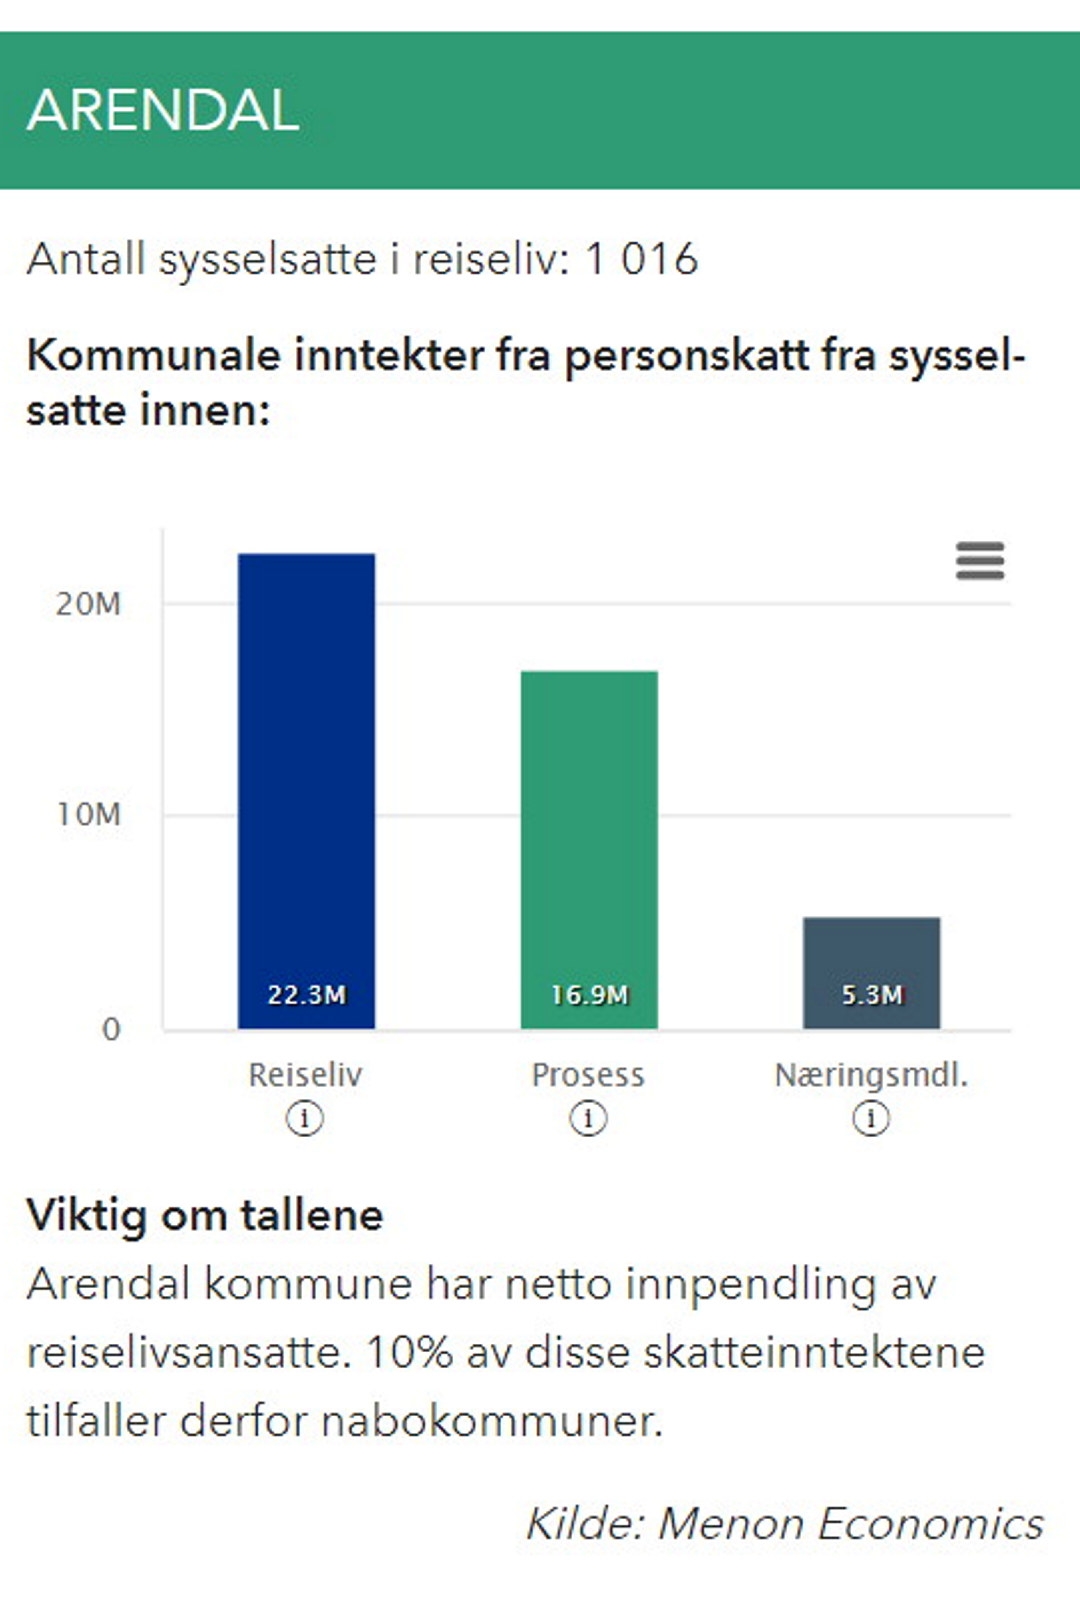 graf som viser skatteinntektene fra ansatte i reiselivet i Arendal. Illustrasjon